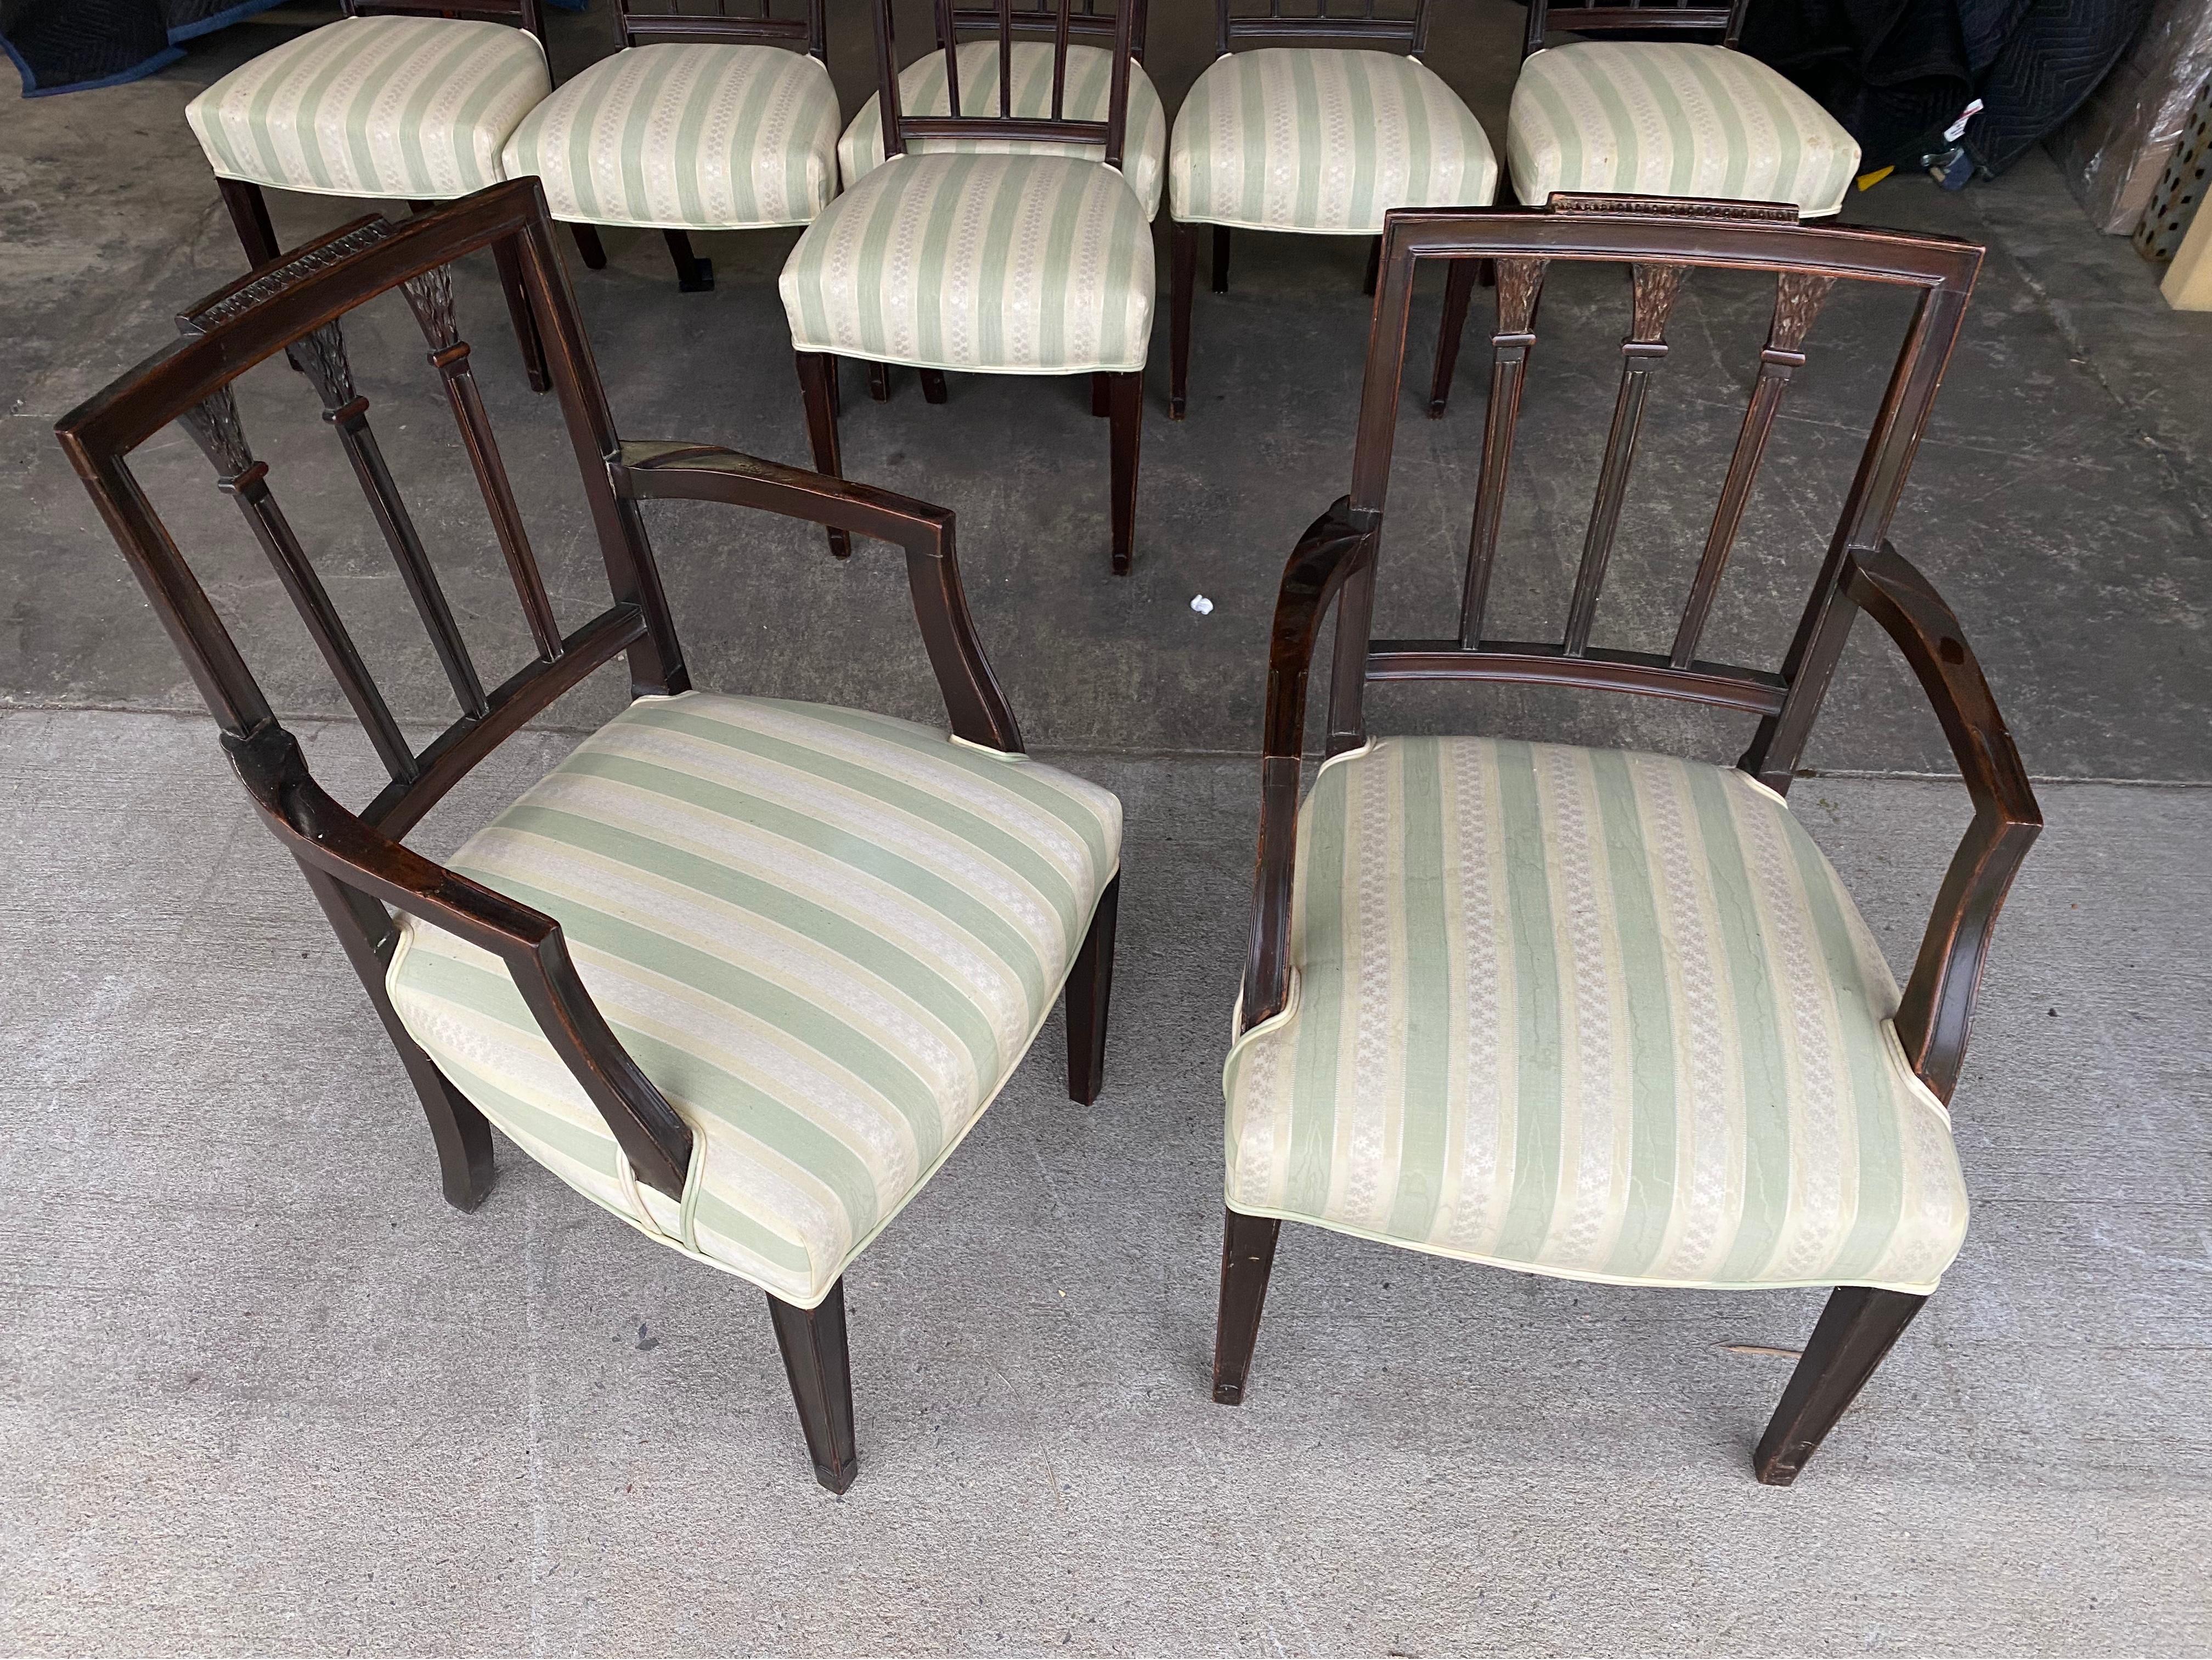 Superbe ensemble de 8 chaises de salle à manger en acajou anglais du 19ème siècle. Deux fauteuils et six chaises d'appoint. Tous en bon état. La tapisserie a quelques taches et pourrait être refaite ou faire fabriquer des housses. 

Mesures :